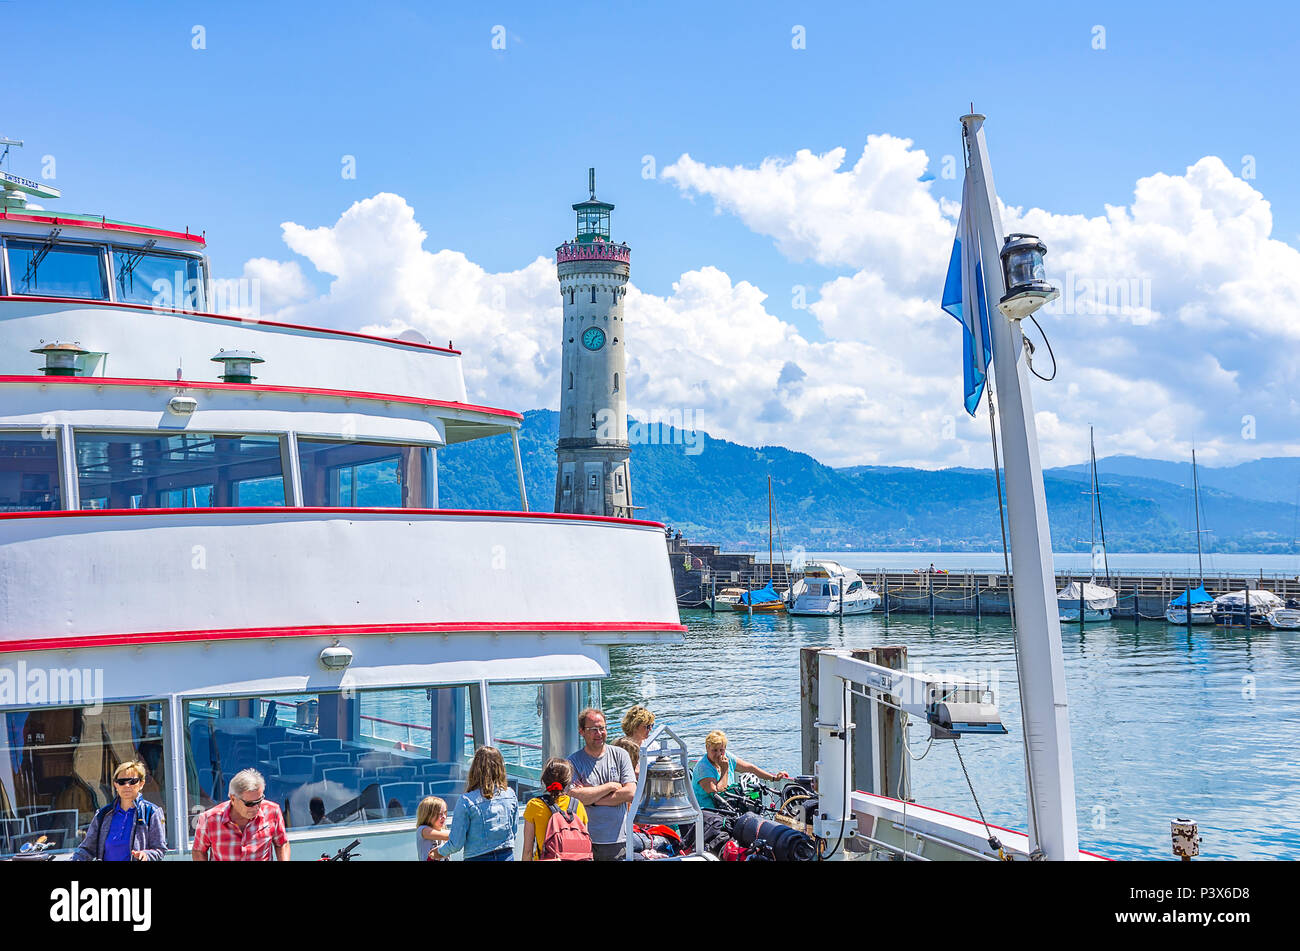 Lindau presso il lago di Costanza, Baviera, Germania - Scena su una barca per gite che appena è arrivato al molo. Foto Stock